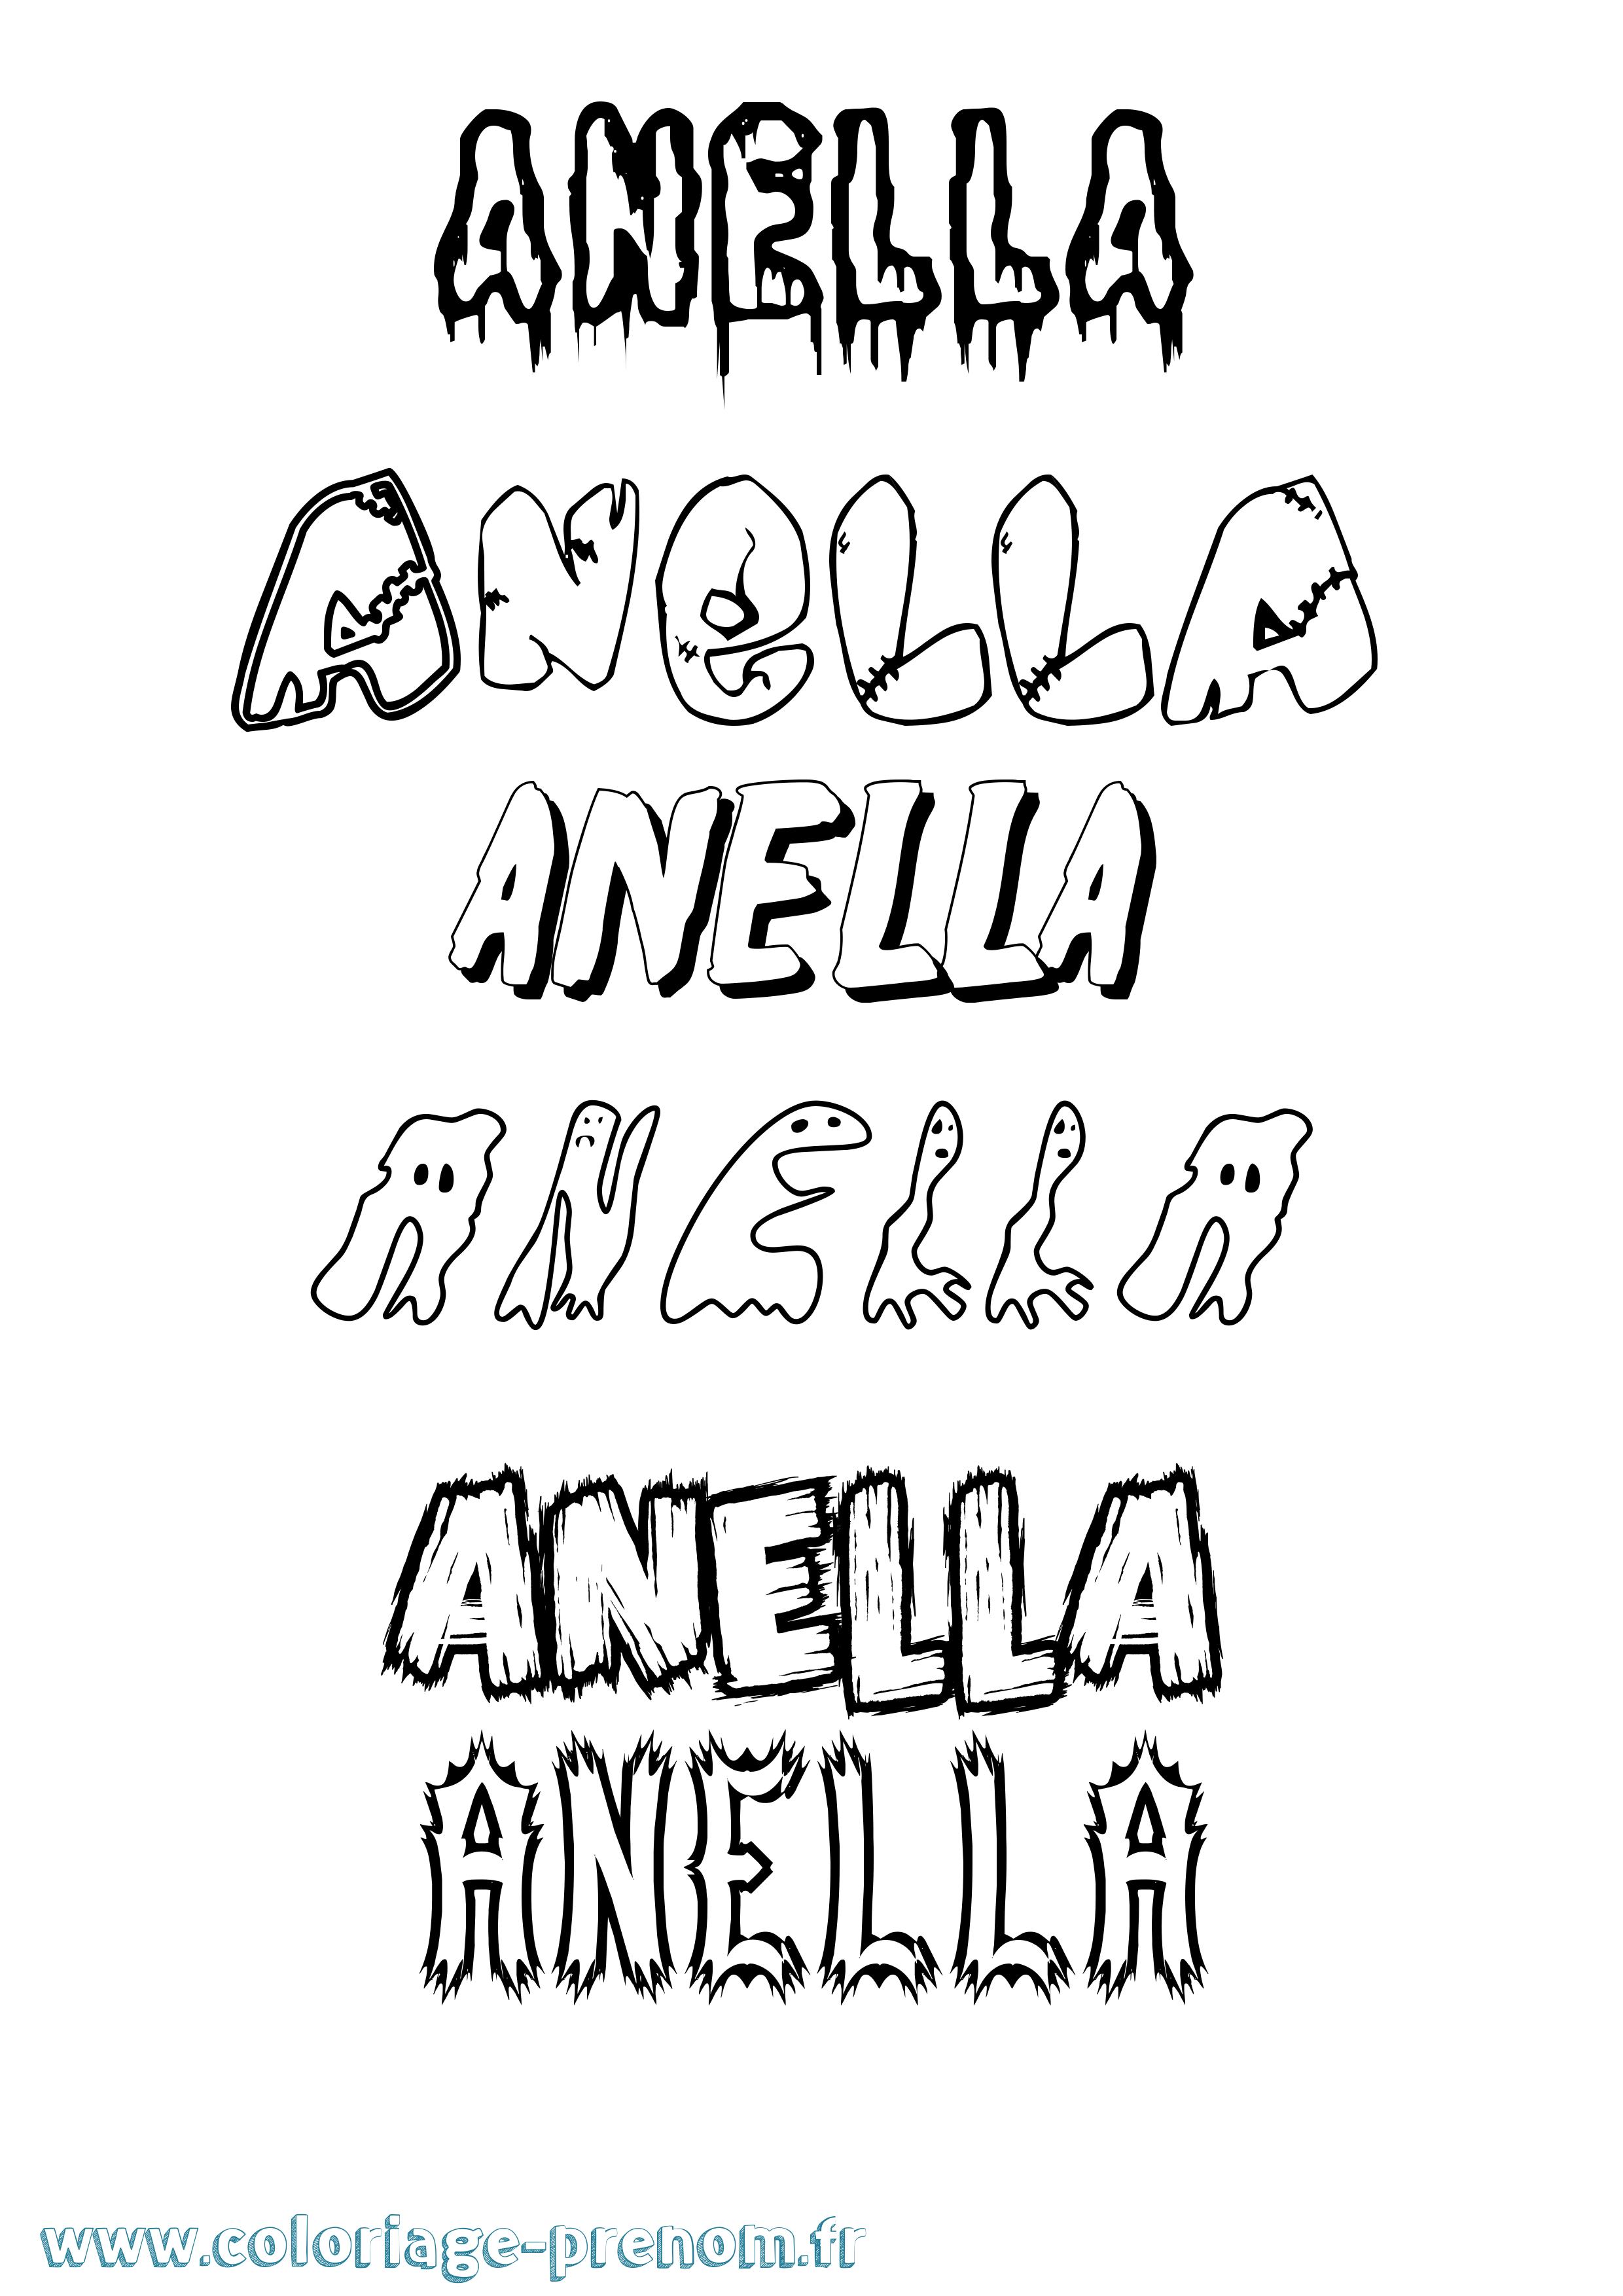 Coloriage prénom Anella Frisson